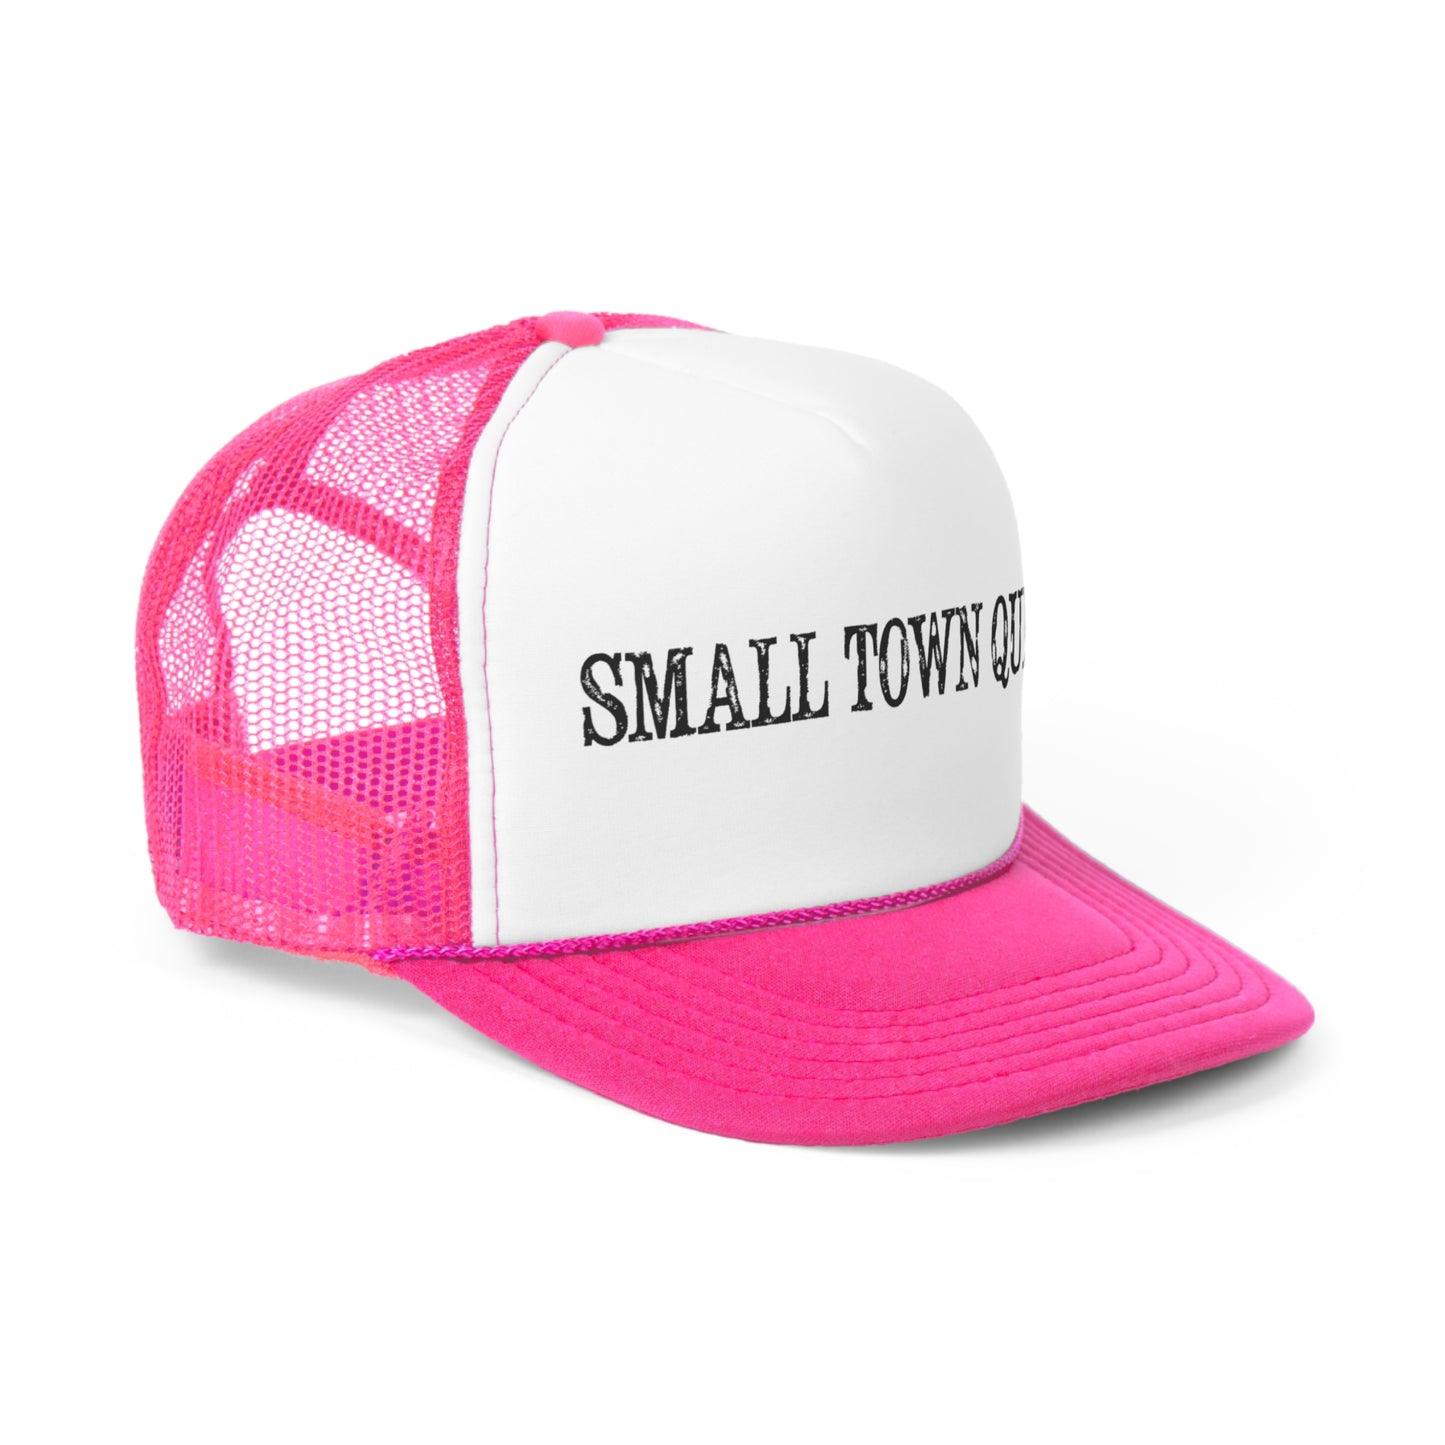 Small Town Queer Trucker Cap